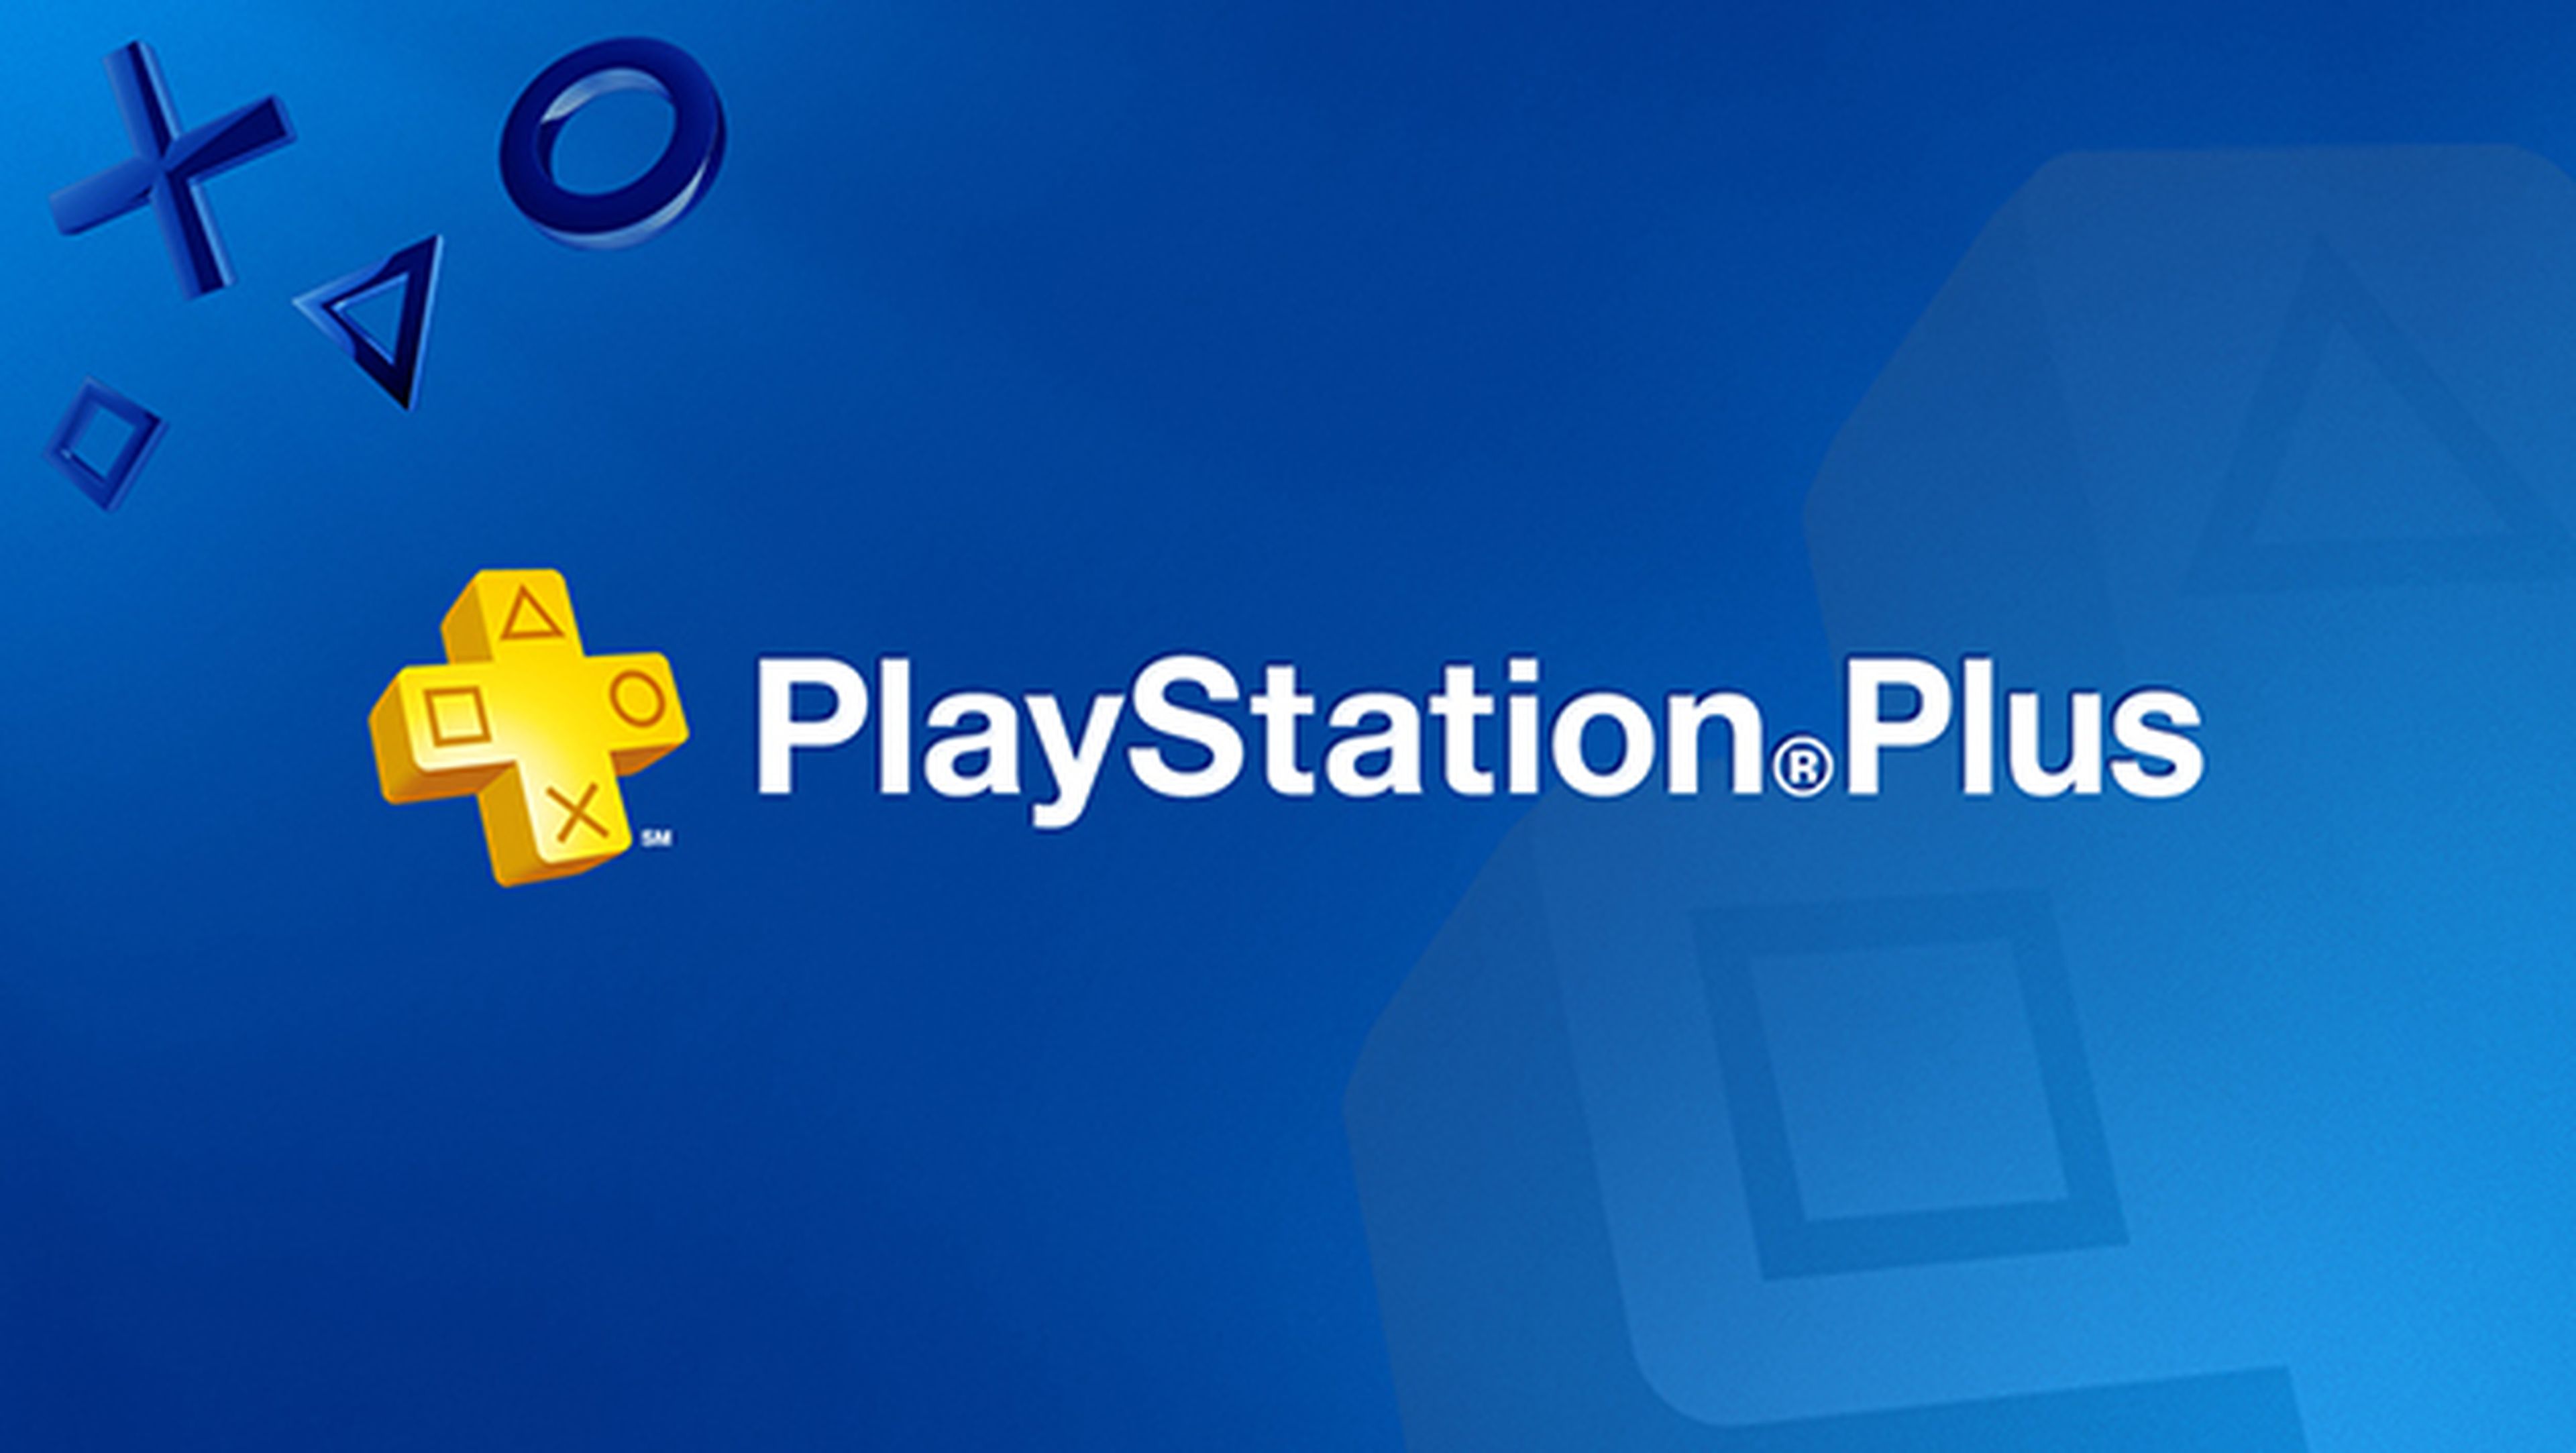 Playstation Plus, gratis durante 14 días con una oferta para PS4.